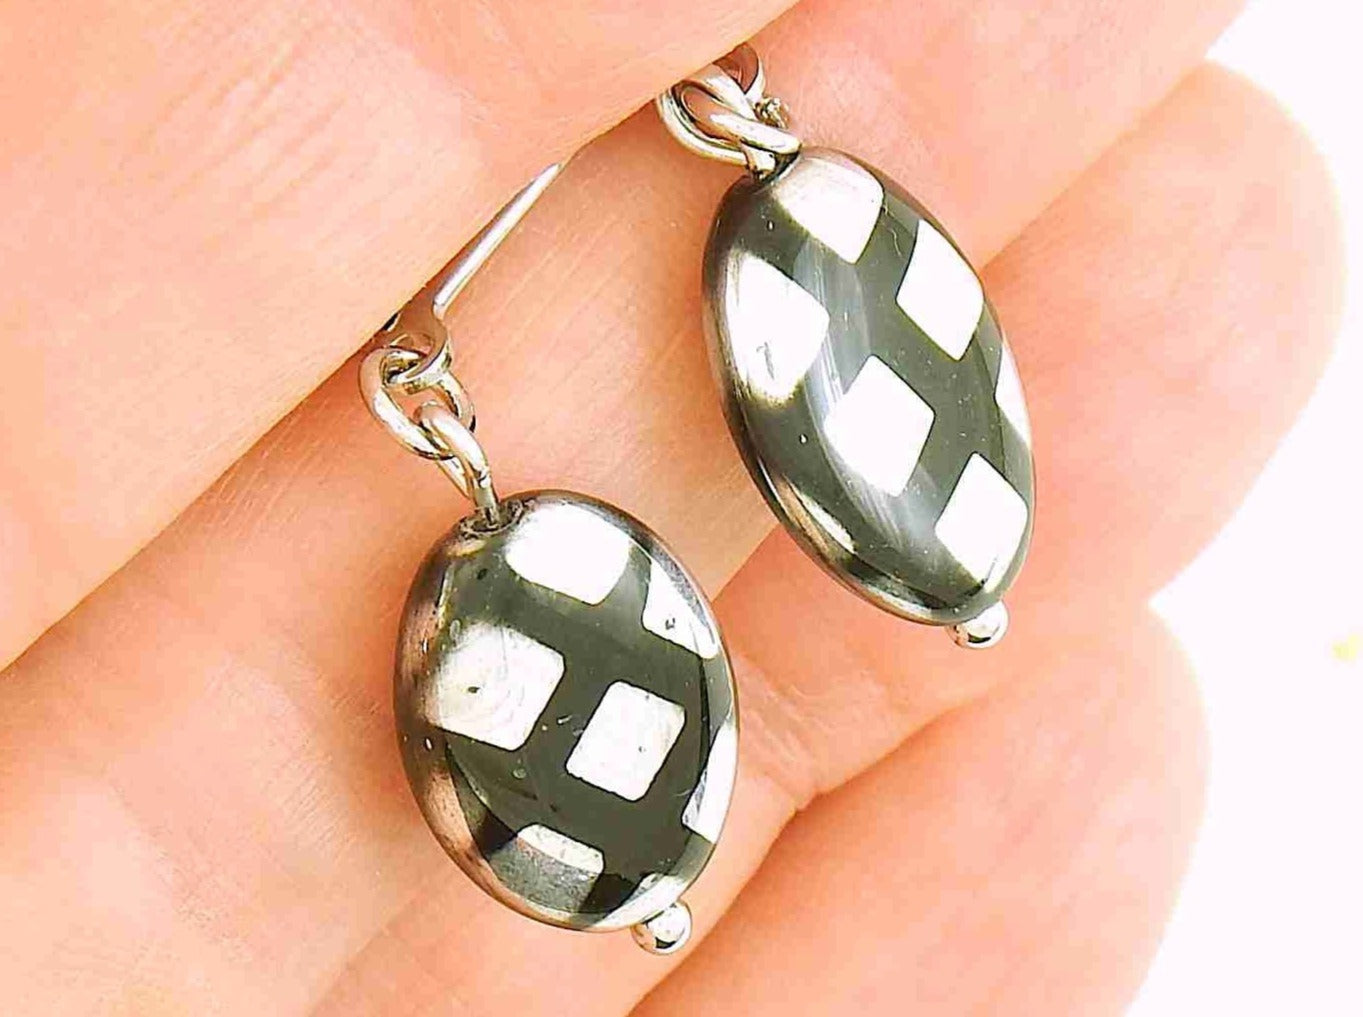 Boucles d'oreilles courtes petits ovales de verre tchèque brillant noir, choix de 2 motifs (pois multicolores, quadrillé argenté), crochets à levier acier inoxydable